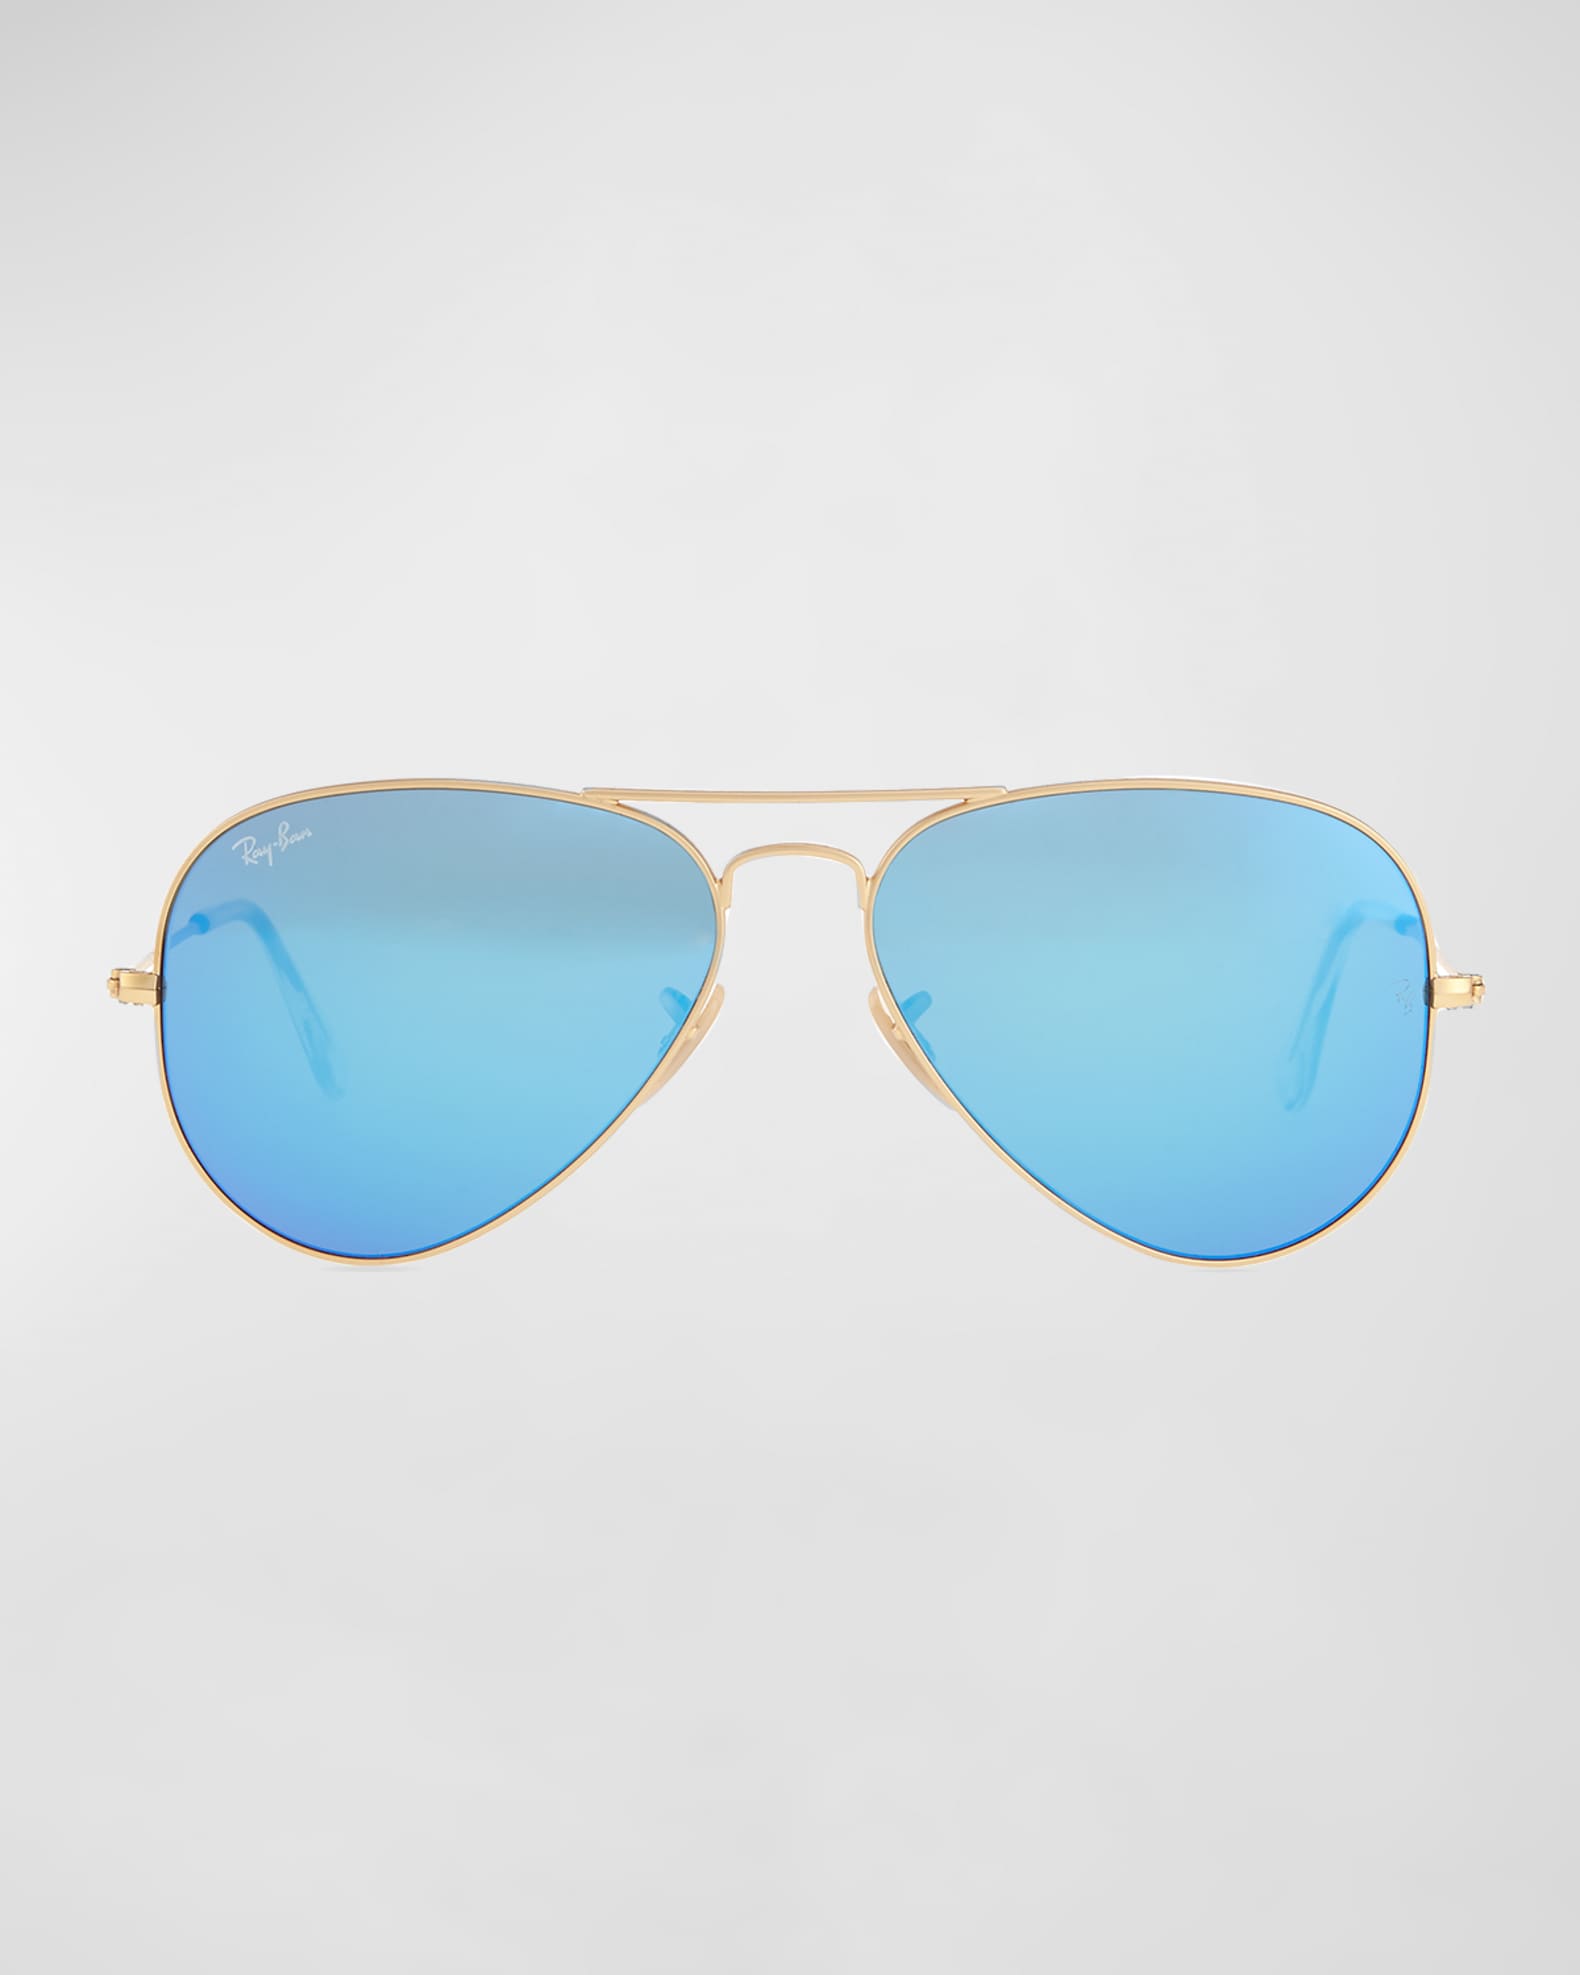 Ray-Ban Mirrored Aviator Sunglasses | Neiman Marcus